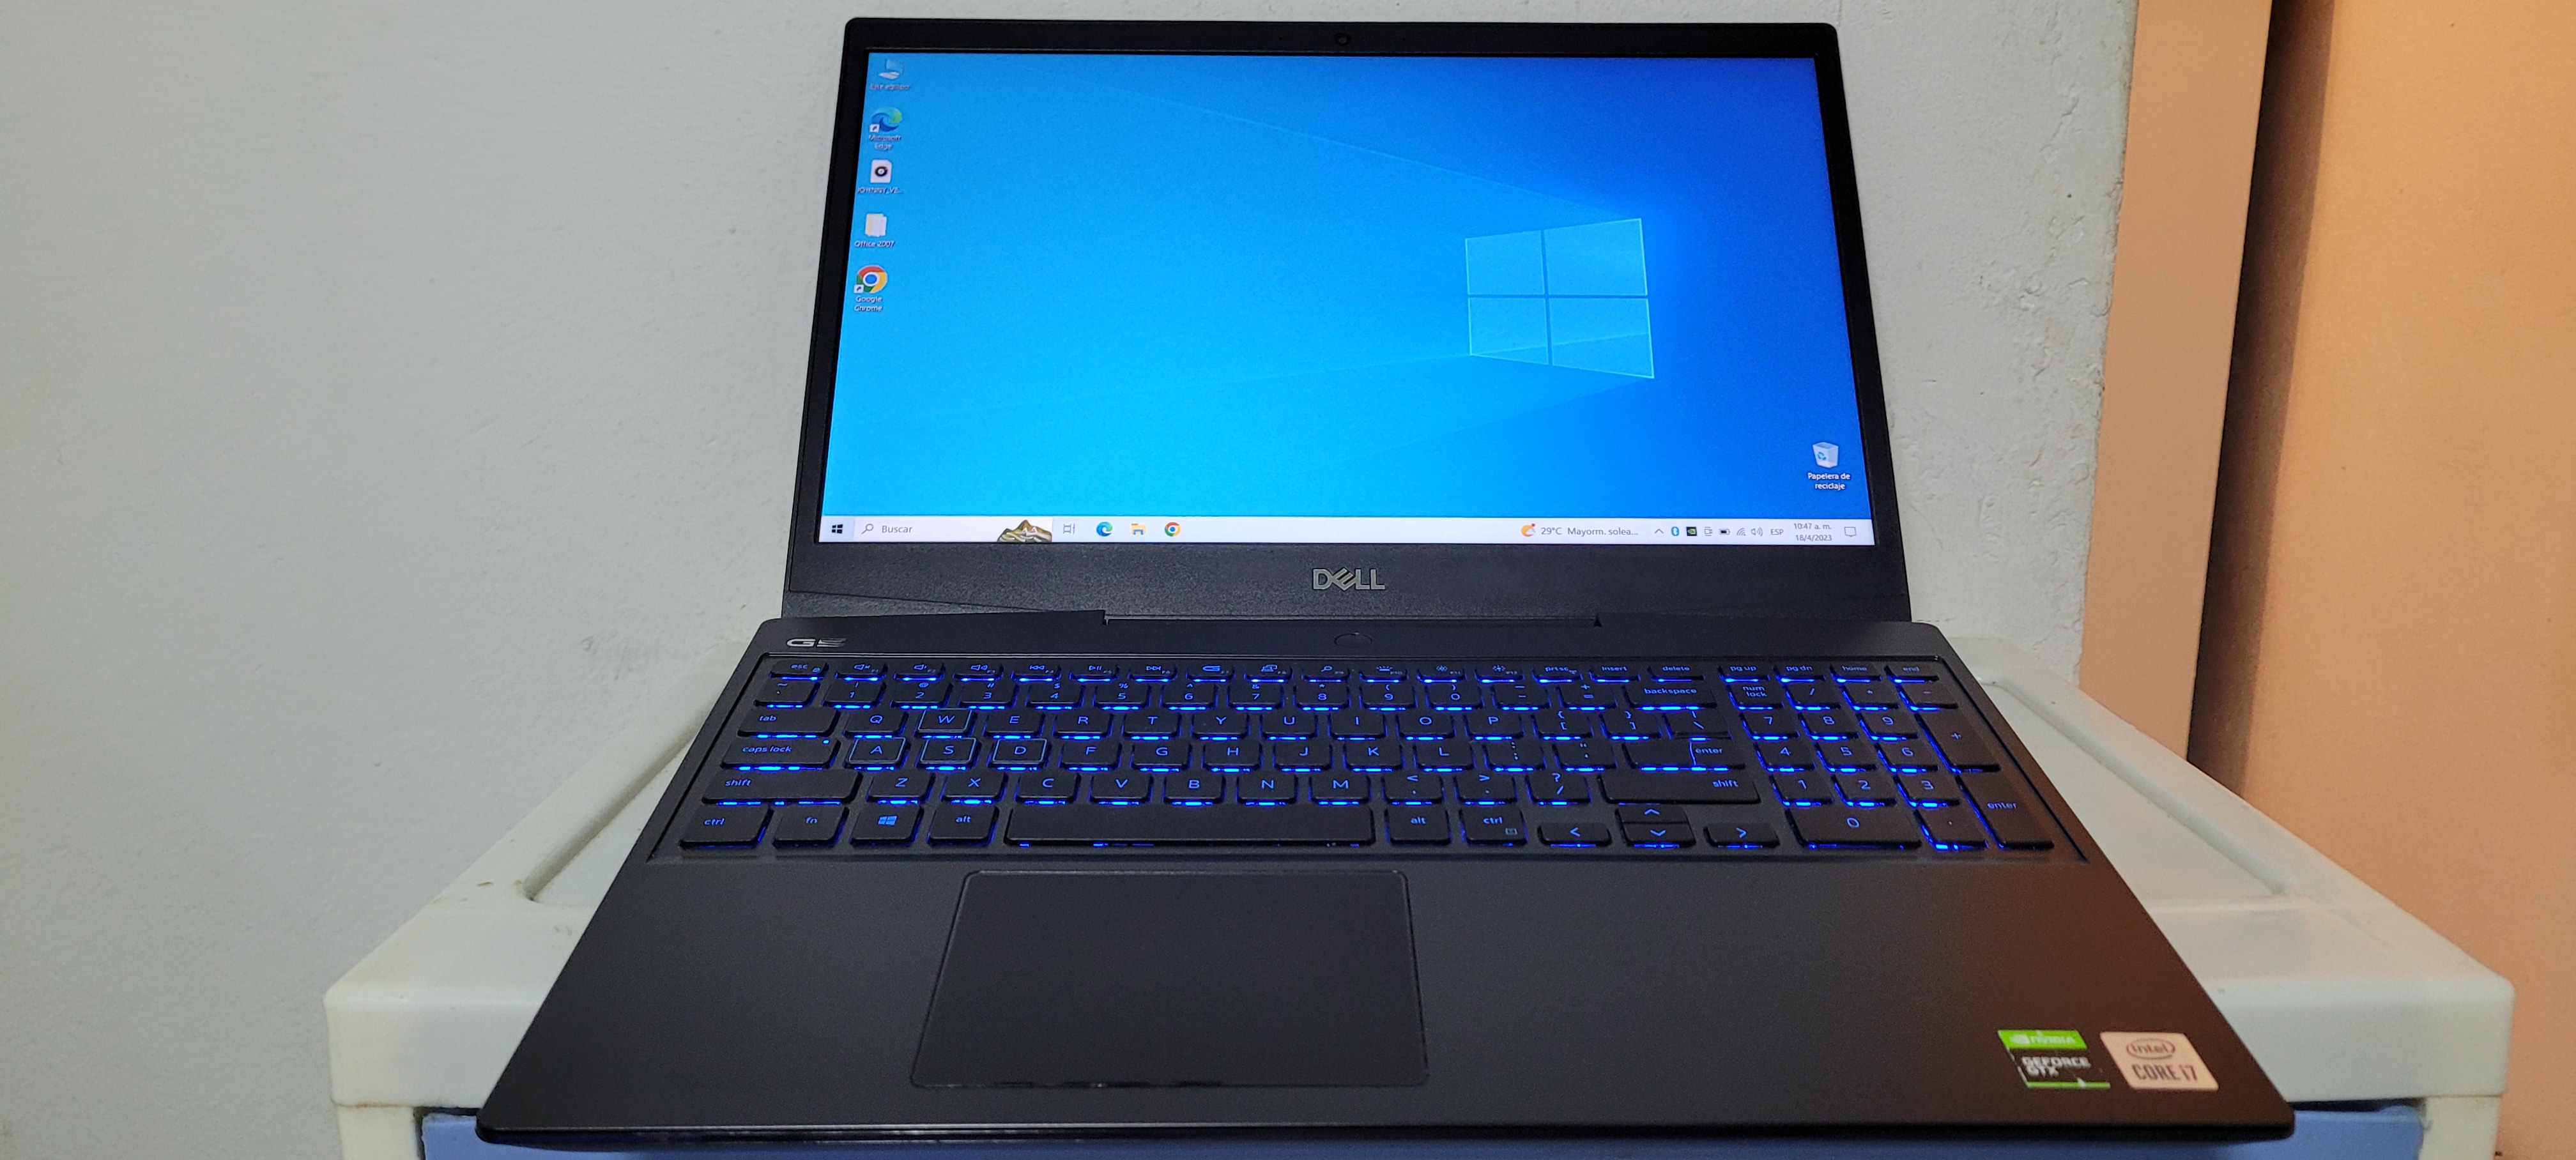 computadoras y laptops - Laptop Dell g5 17 Pulg Core i7 10th Gen Ram 16gb Disco 256 Y 1TB Gtx 165pTi 4gb